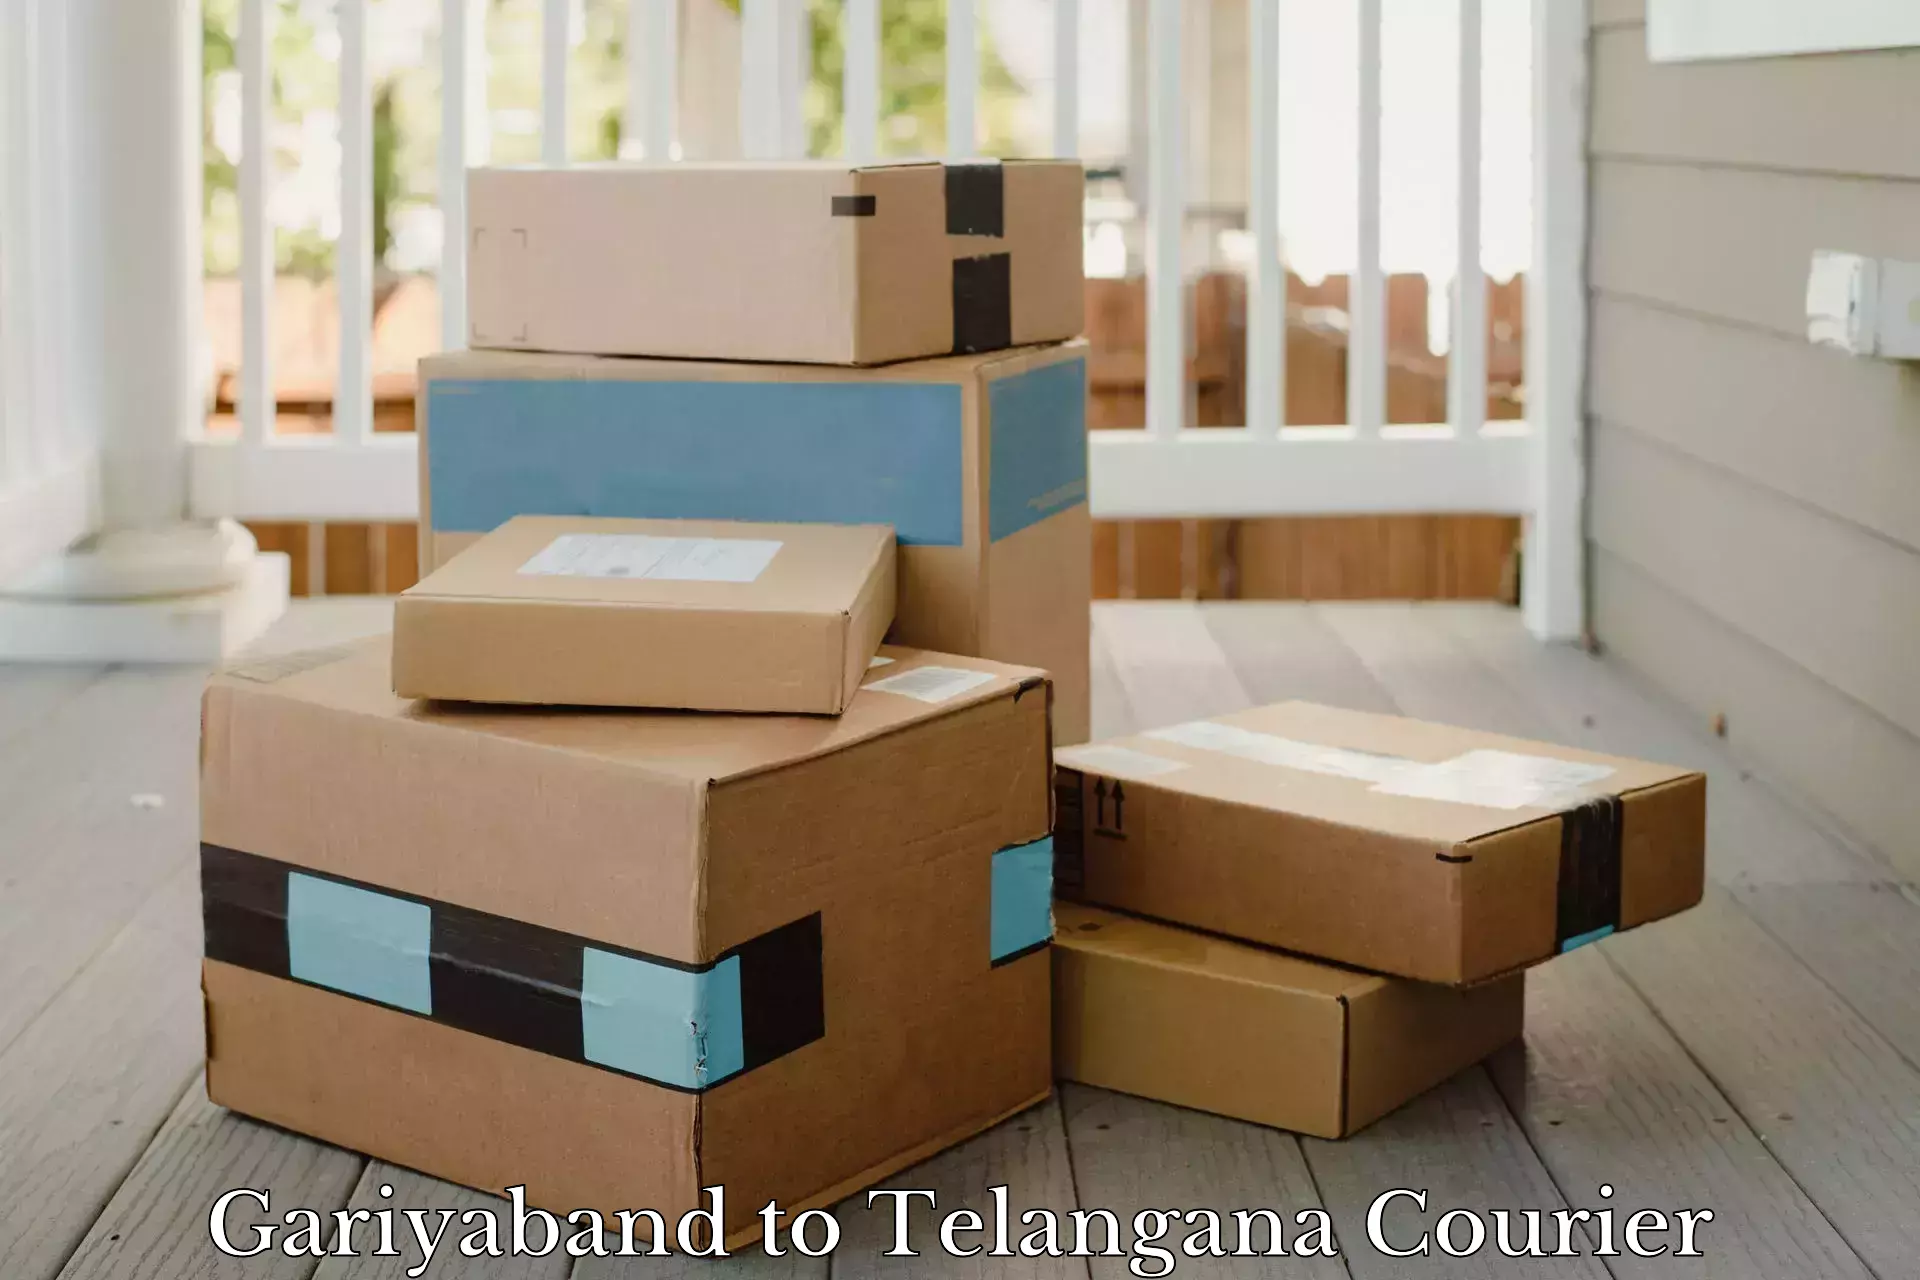 Package tracking in Gariyaband to Telangana